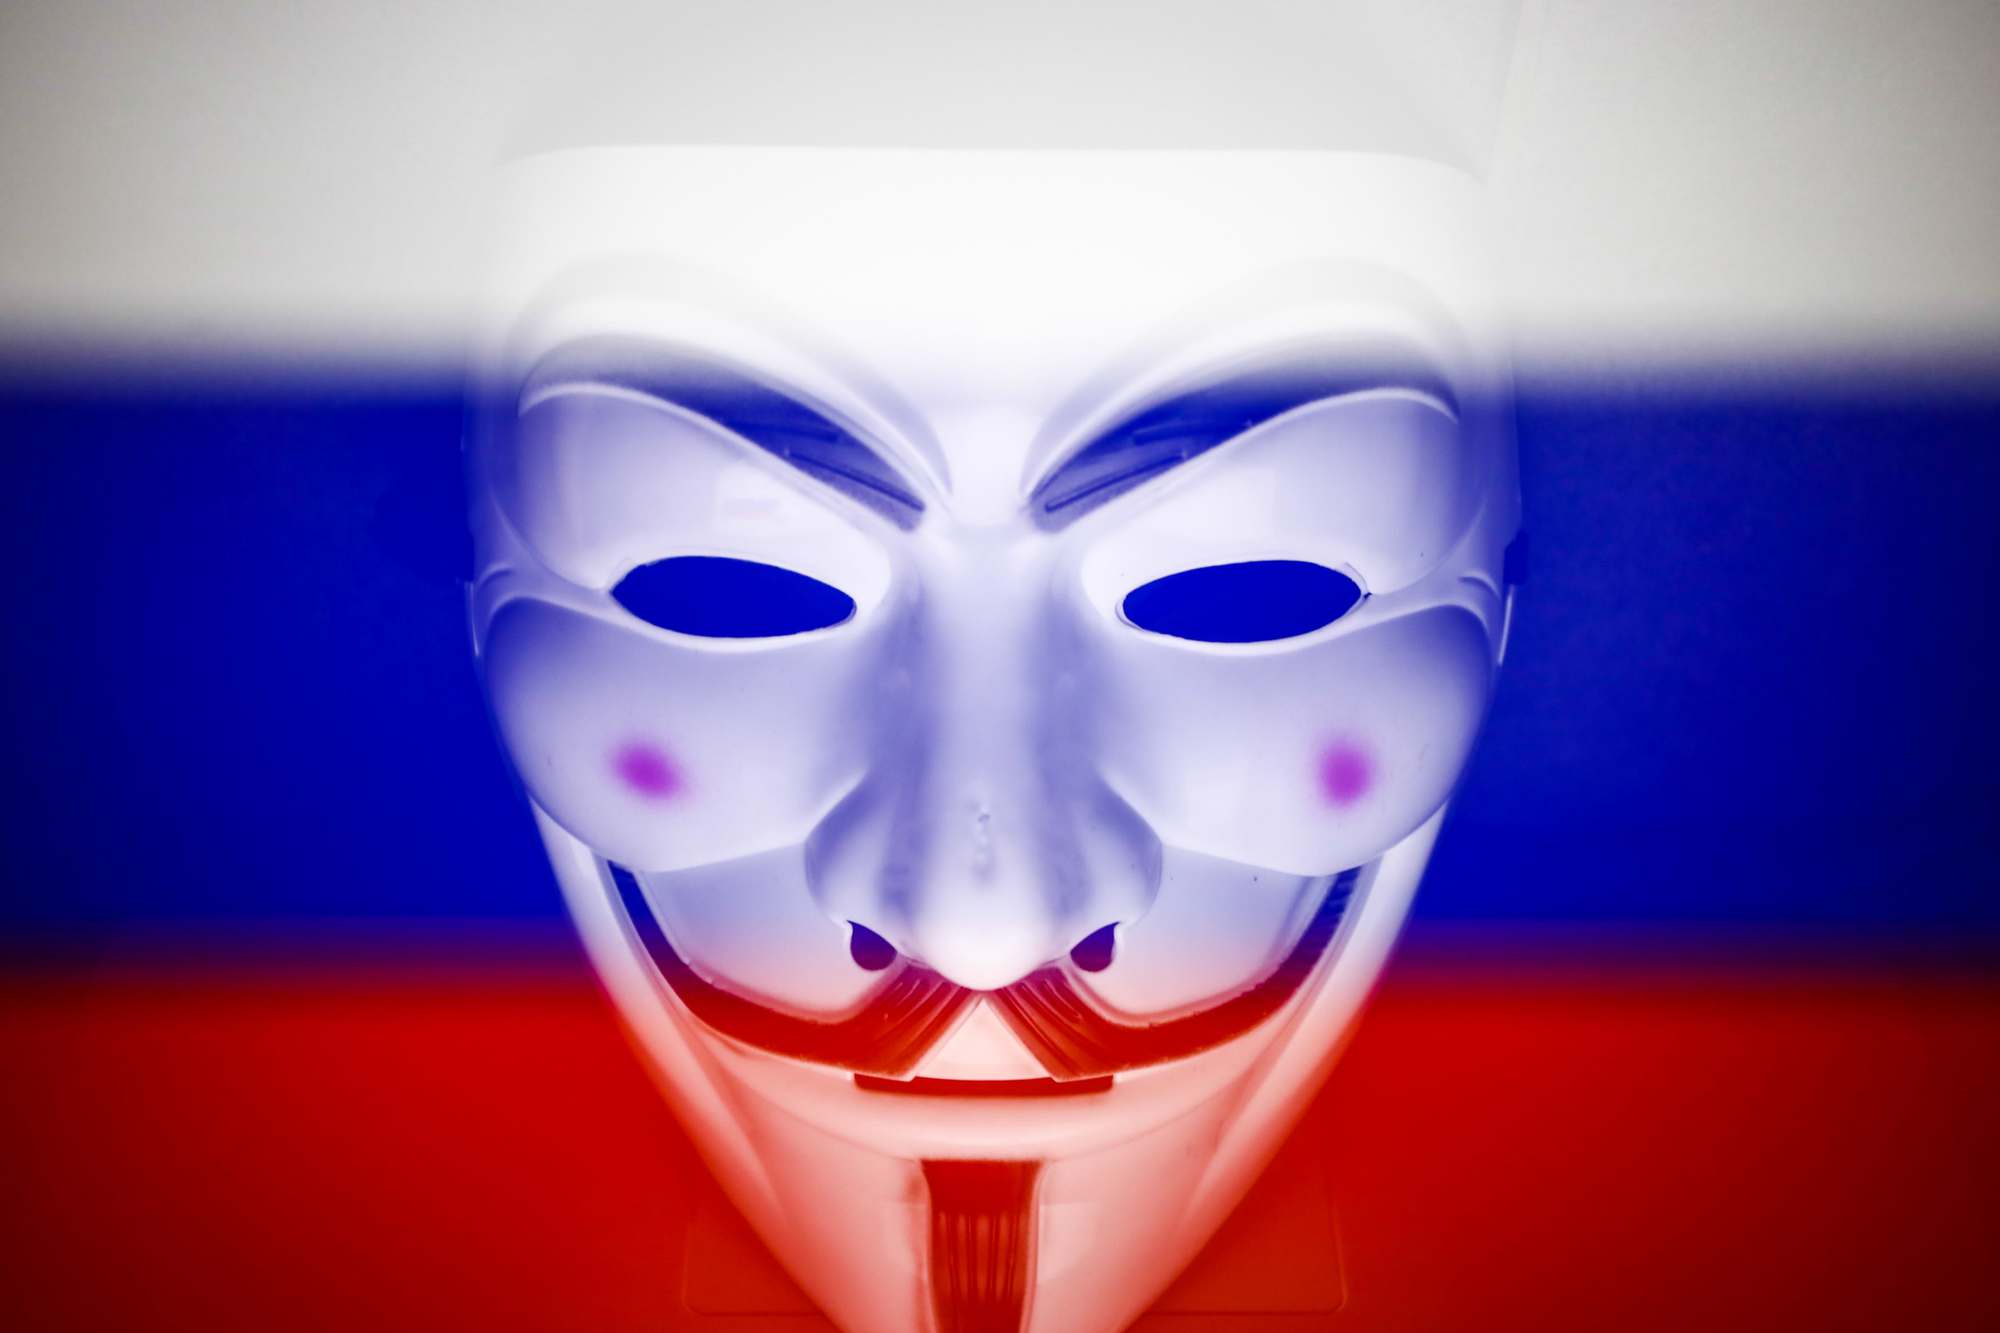 Nhóm hacker Anonymous tấn công hệ thống phòng thủ mạng của Nga, vén màn nhiều hoạt động